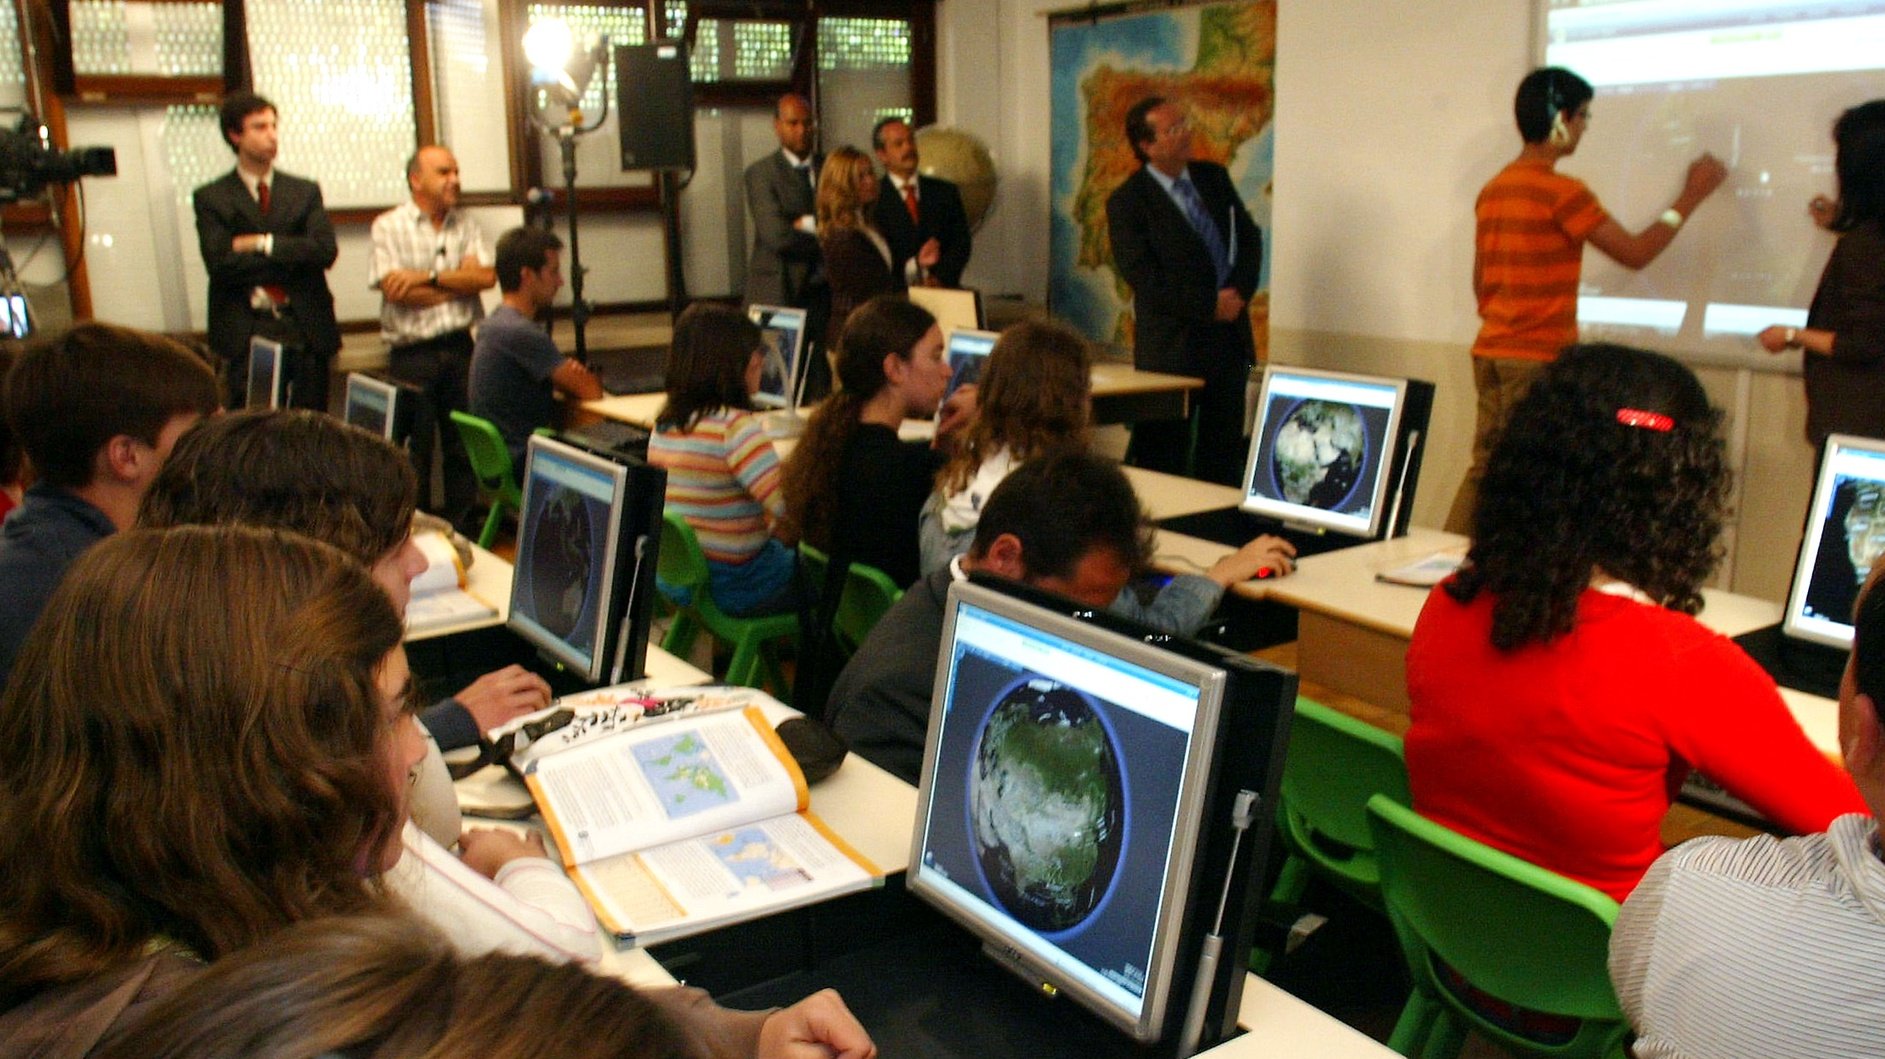 Uma aluna assiste a uma aula de geografia com utilizacao de computadores, na Escola Andre Gouveia, integrada no Projecto Piloto no âmbito do Plano Tecnológico Escolas, 16 de Junho de 2008,em Évora. NUNO VEIGA/LUSA